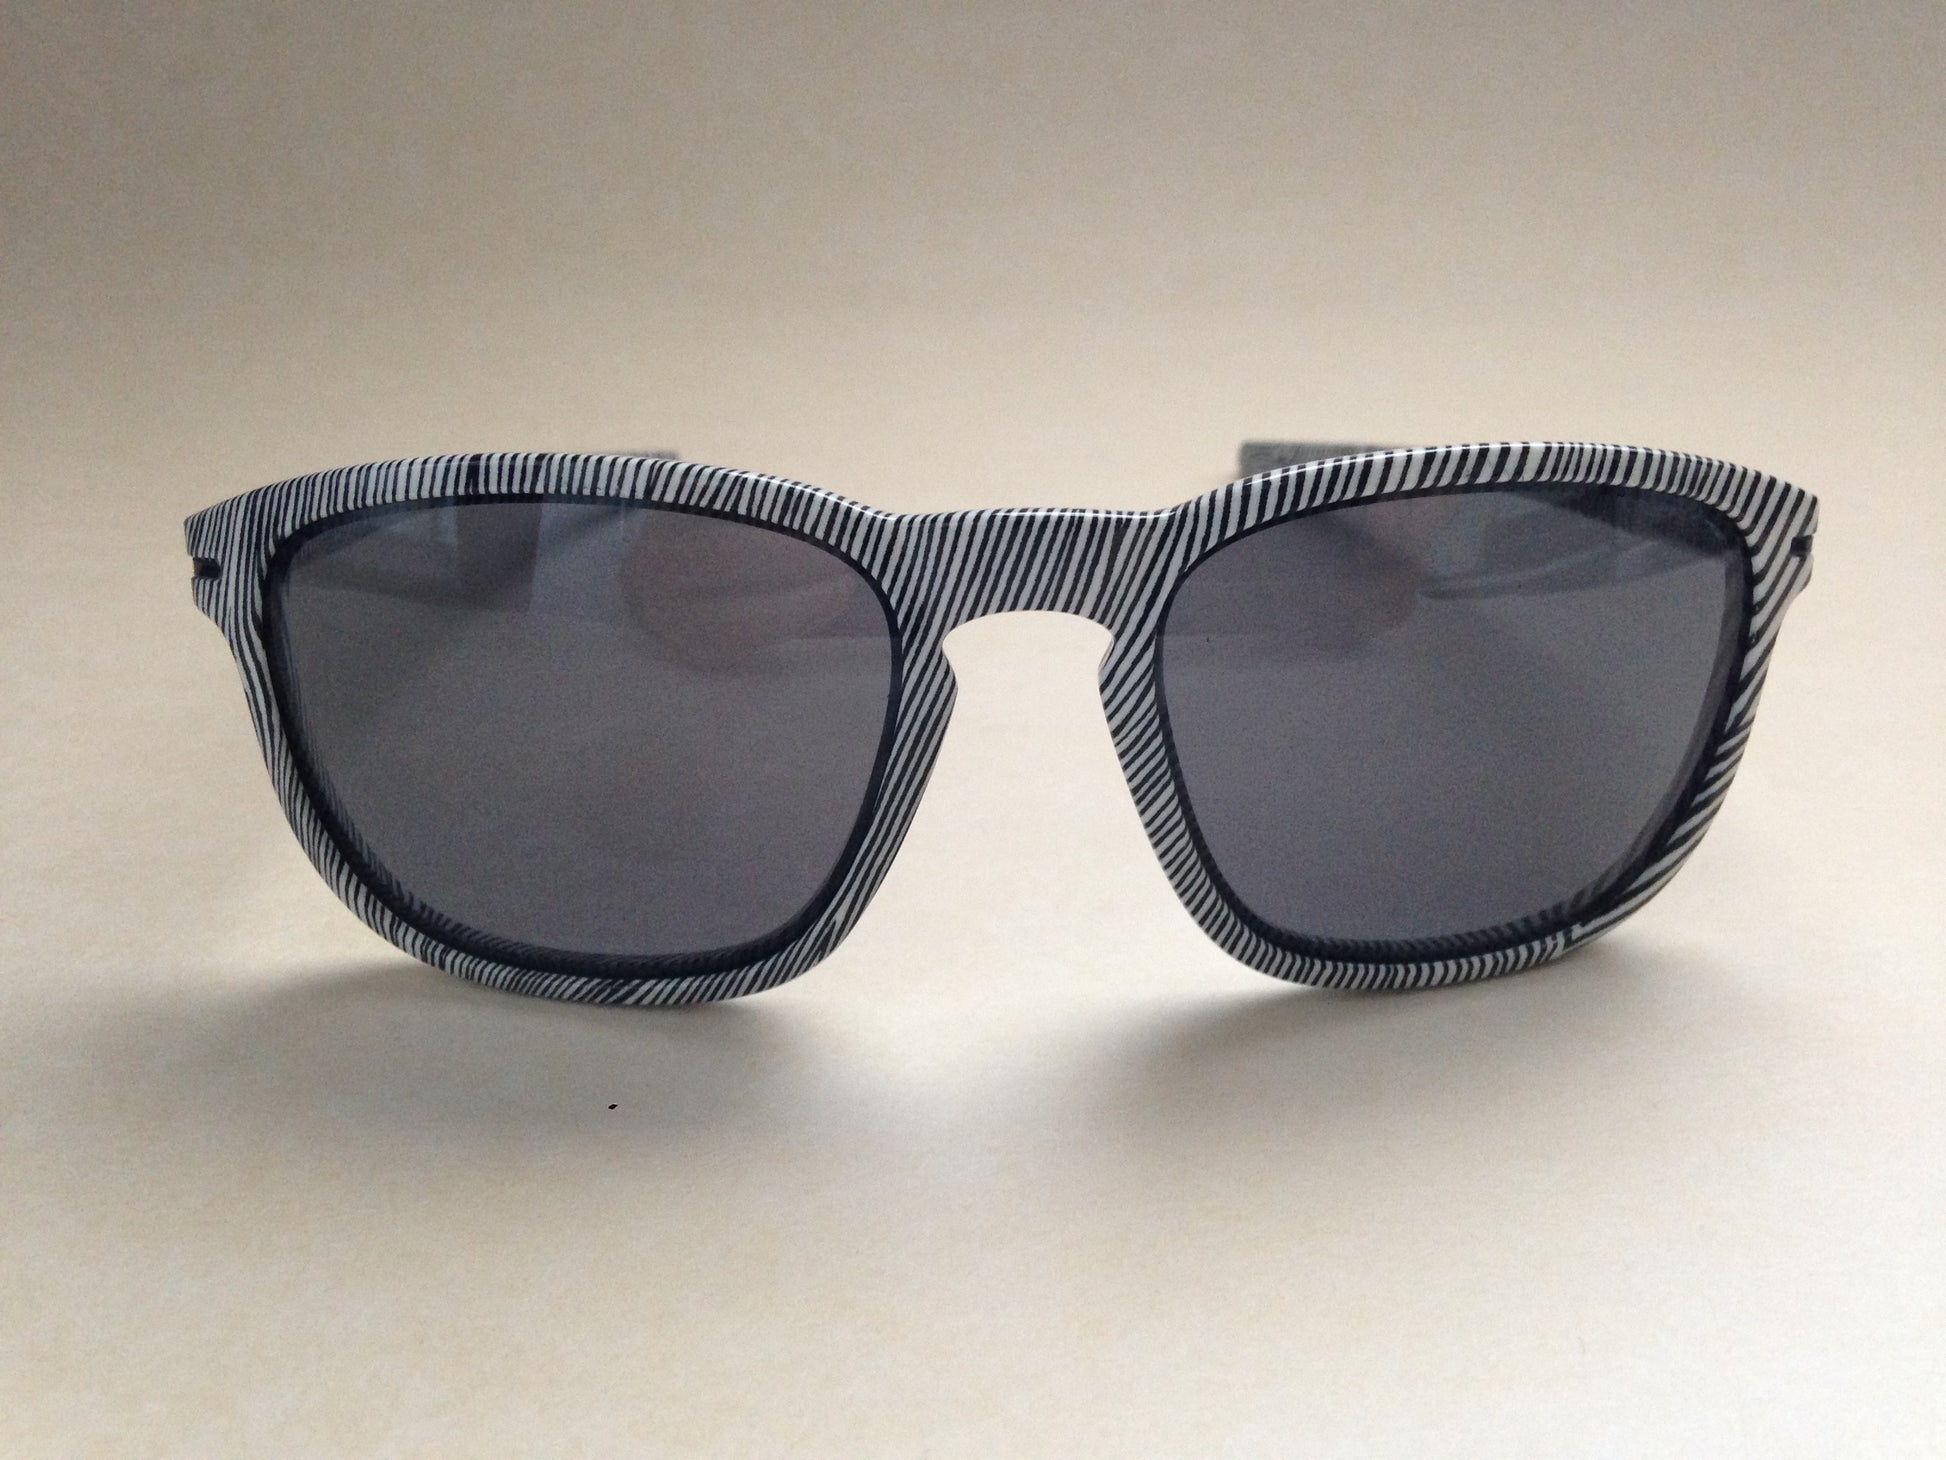 Oakley Enduro Sunglasses Fingerprint White Zebra Swirl Frame Gray Lens Oo9223 21 - Sunglasses